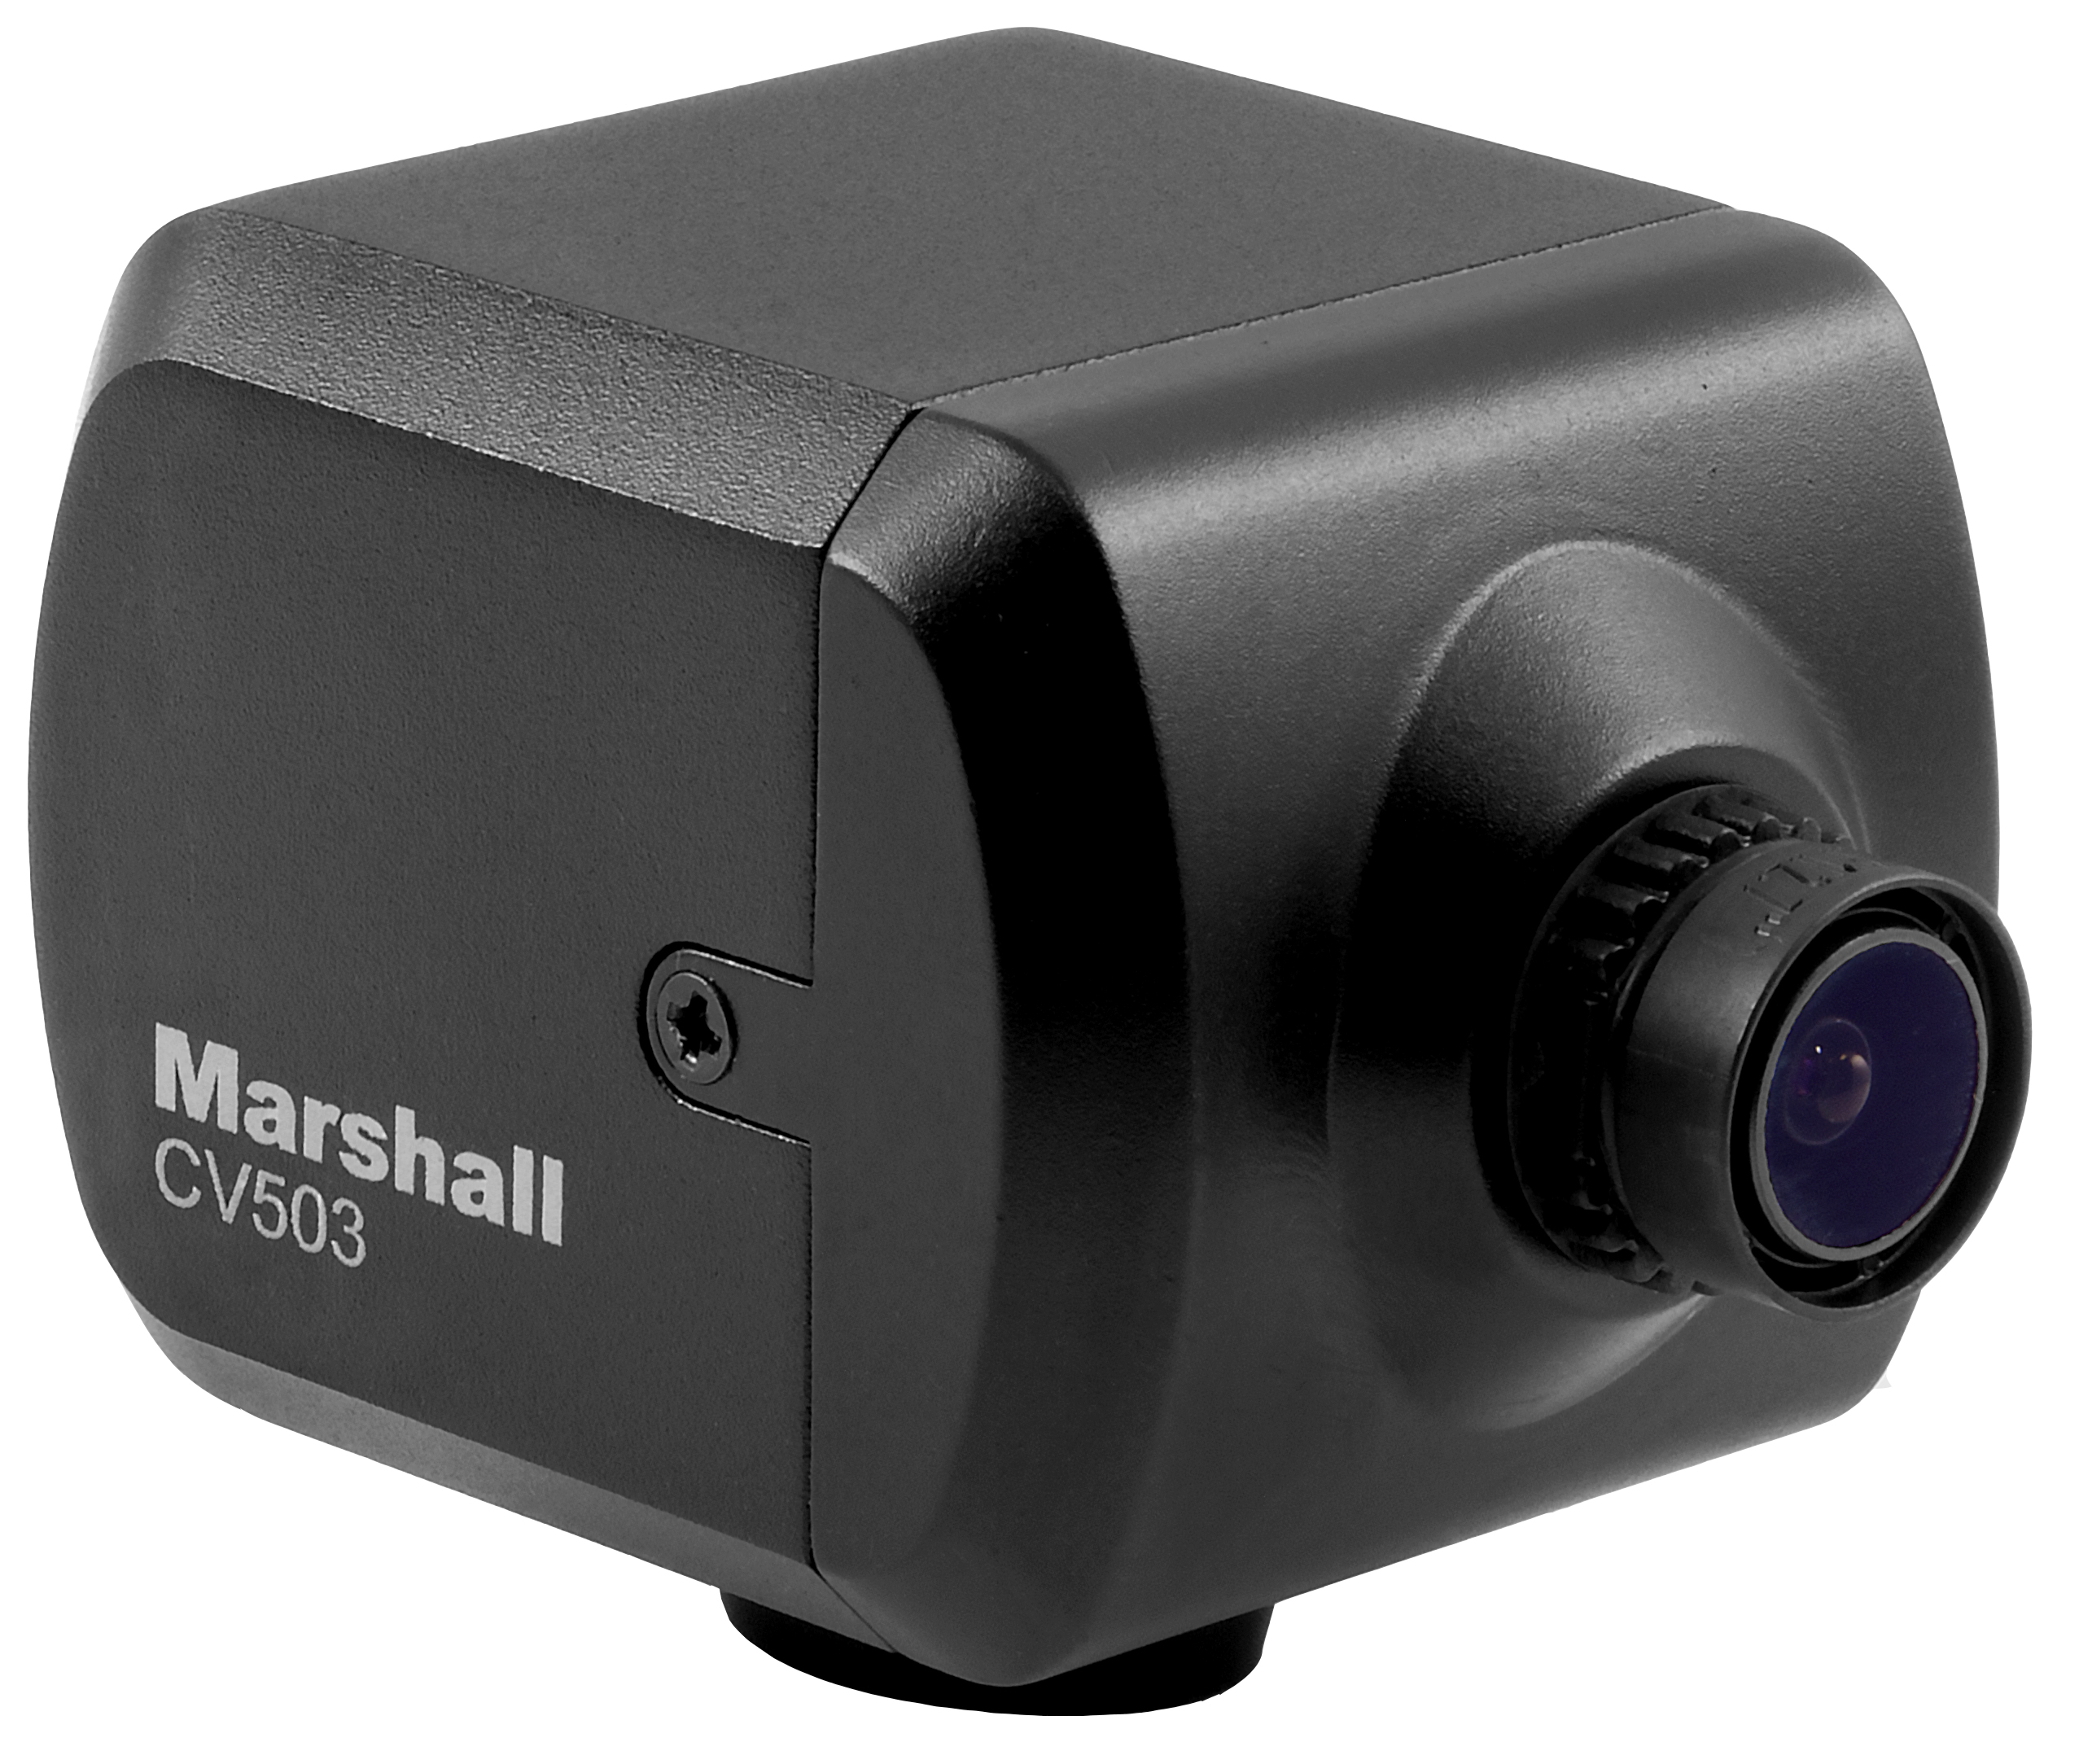 Marshall CV503 Full-HD Camera